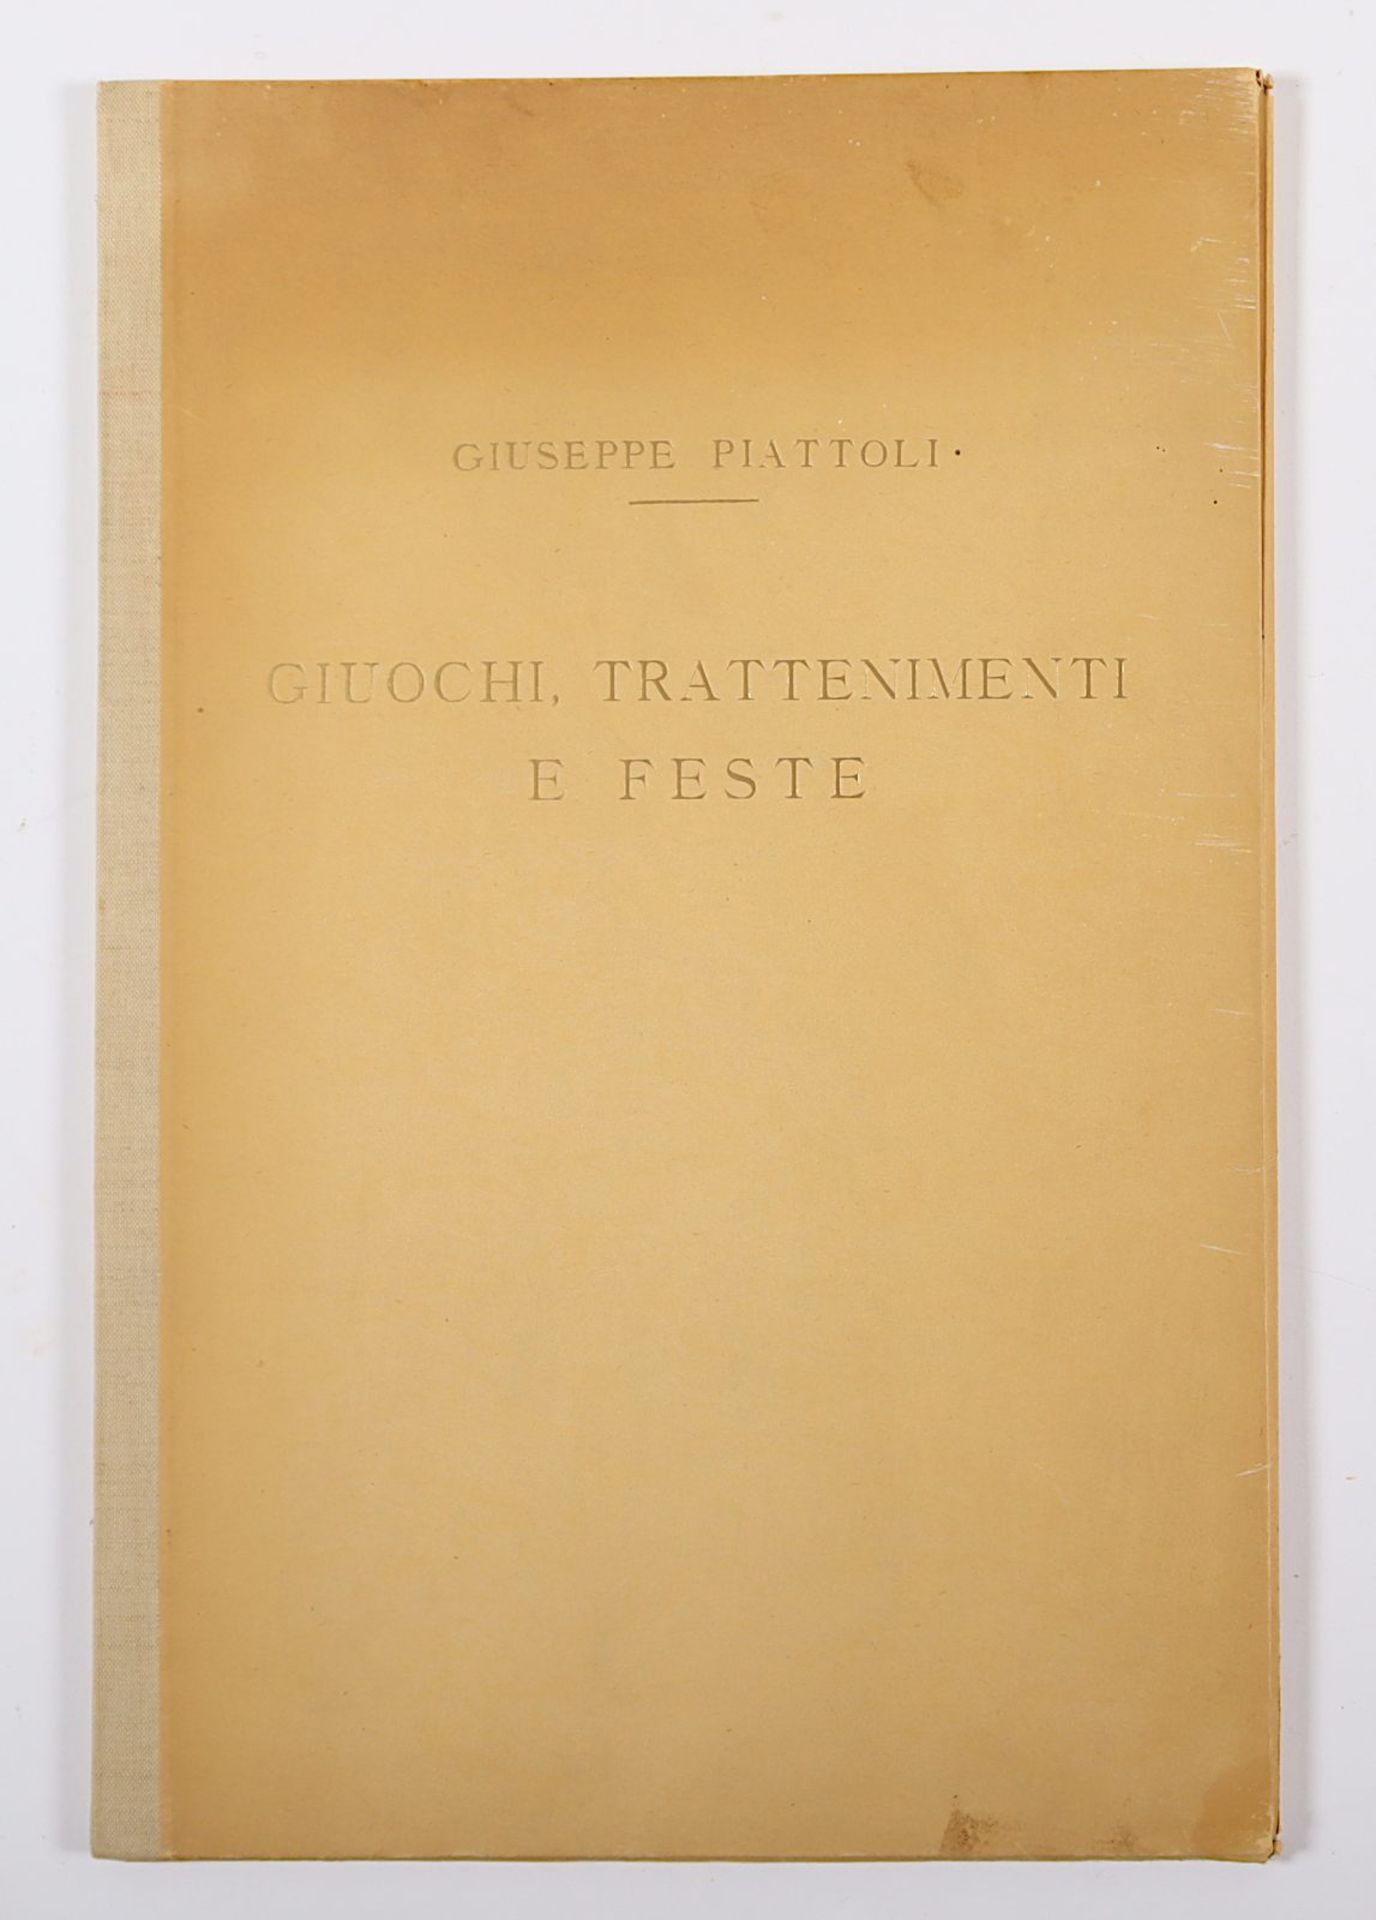 Mappe Giuseppe Piattoli, Giuochi, Trattenimenti e Feste - Image 6 of 6